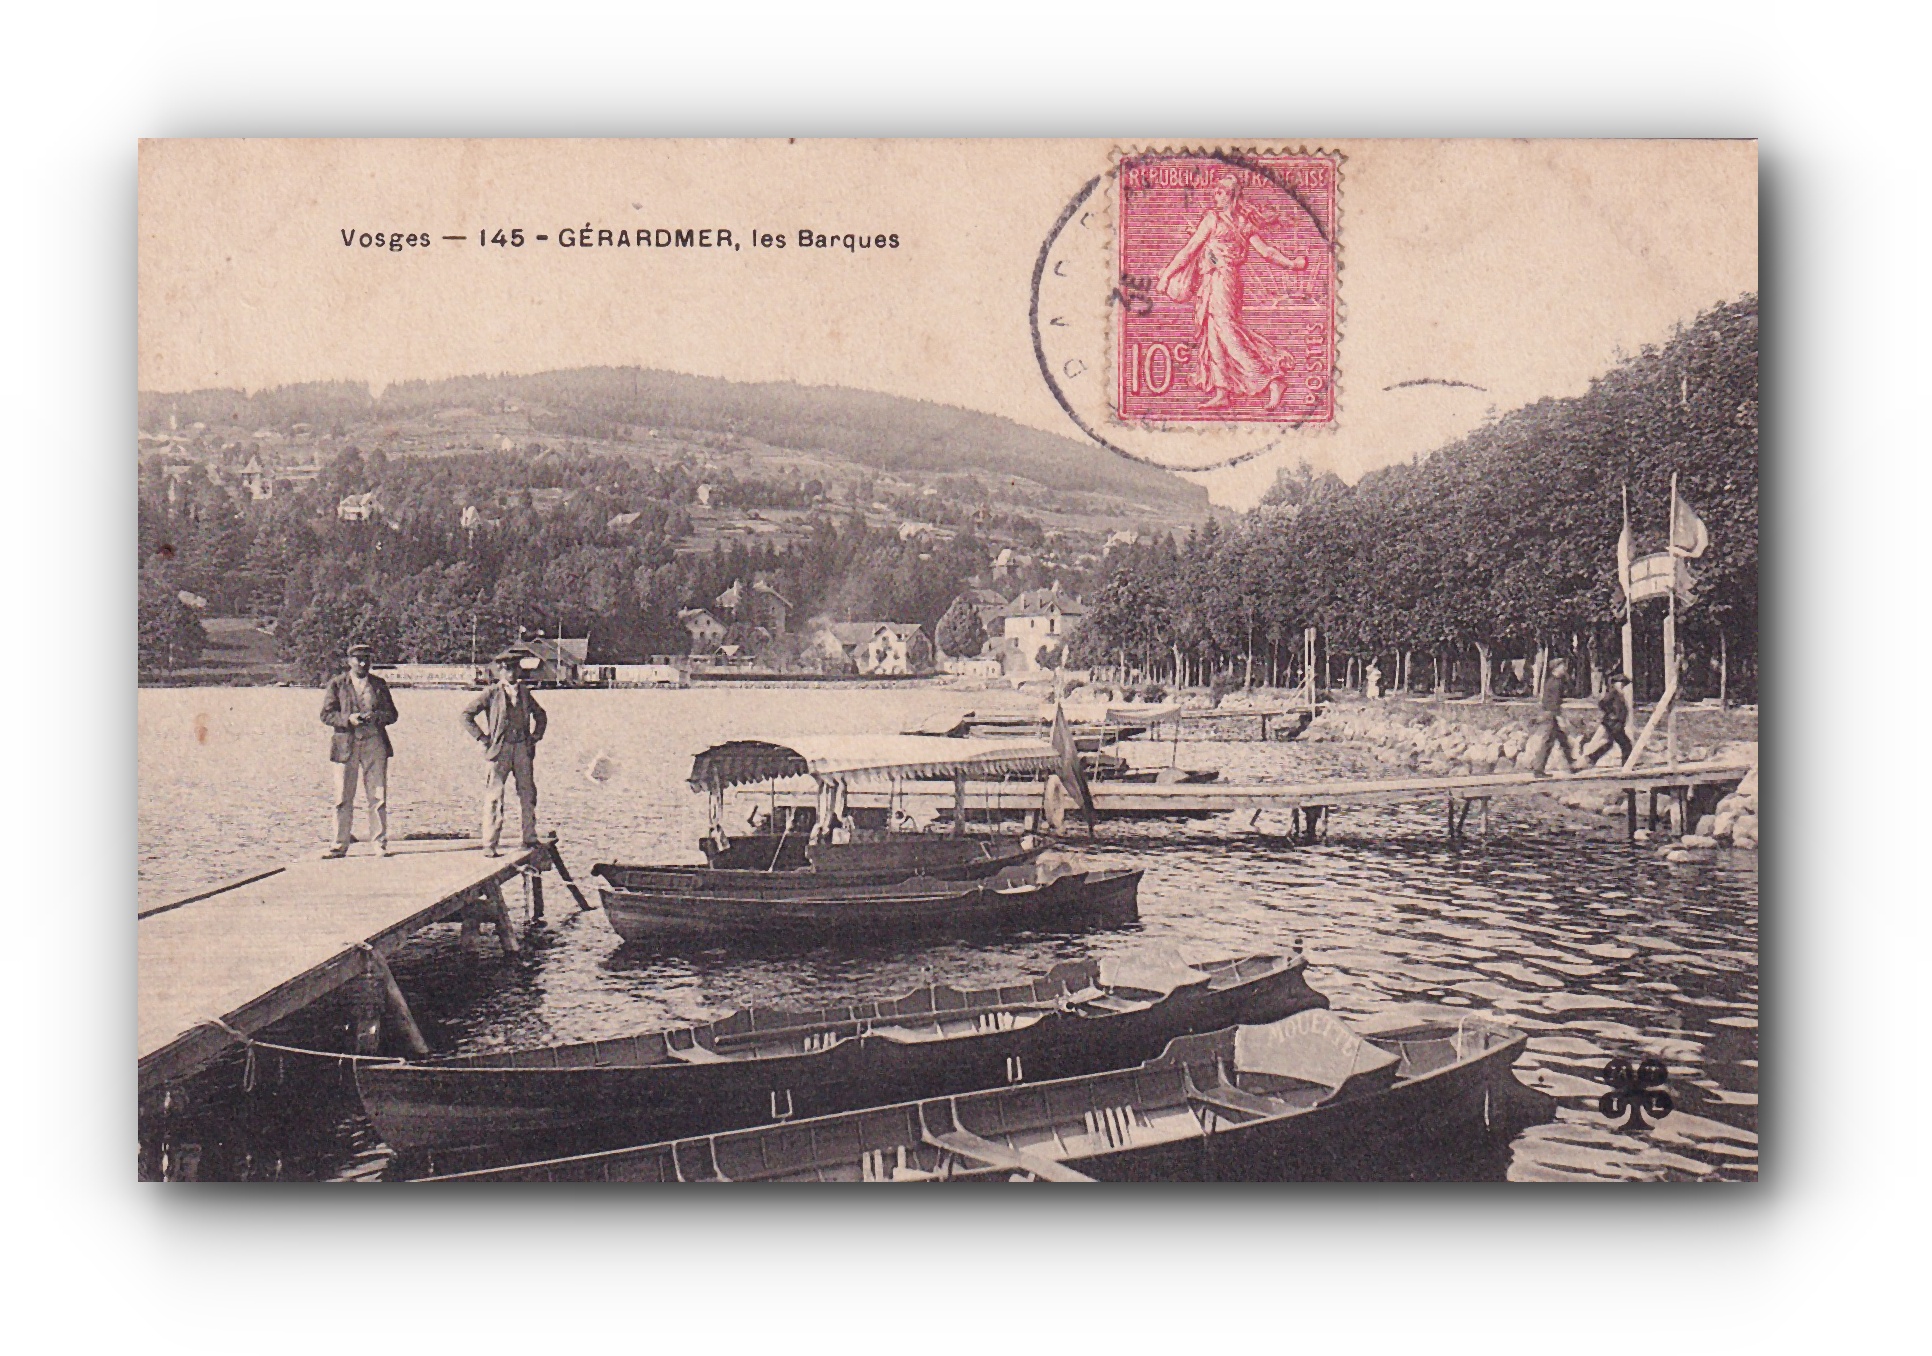 - Les barques - GÉRARDMER - 21.12.1905 -